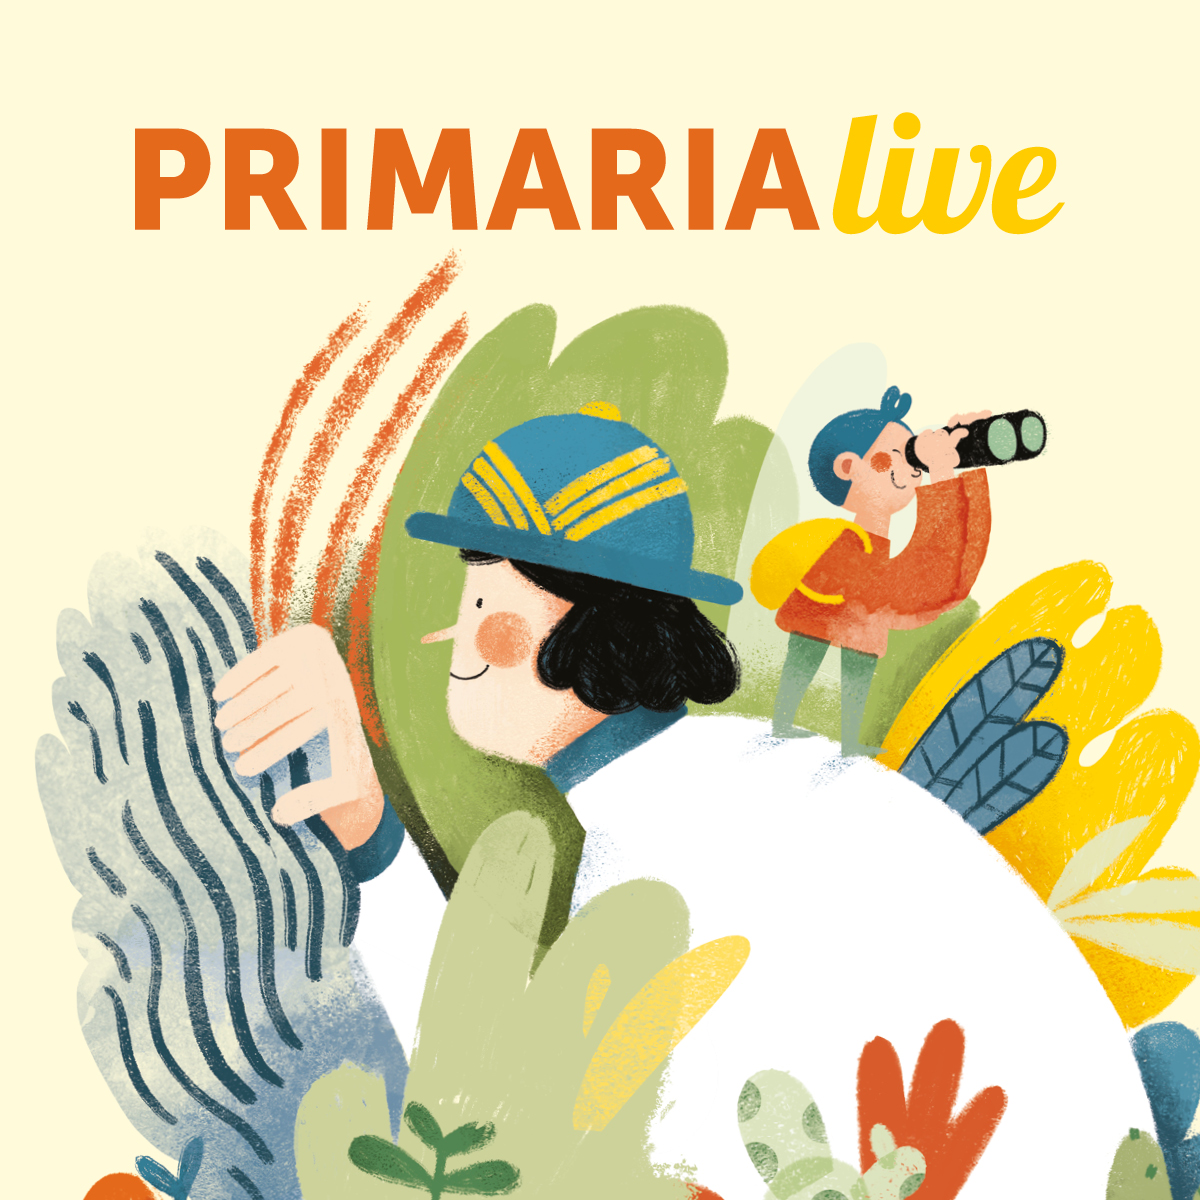 Primaria Live 19/03